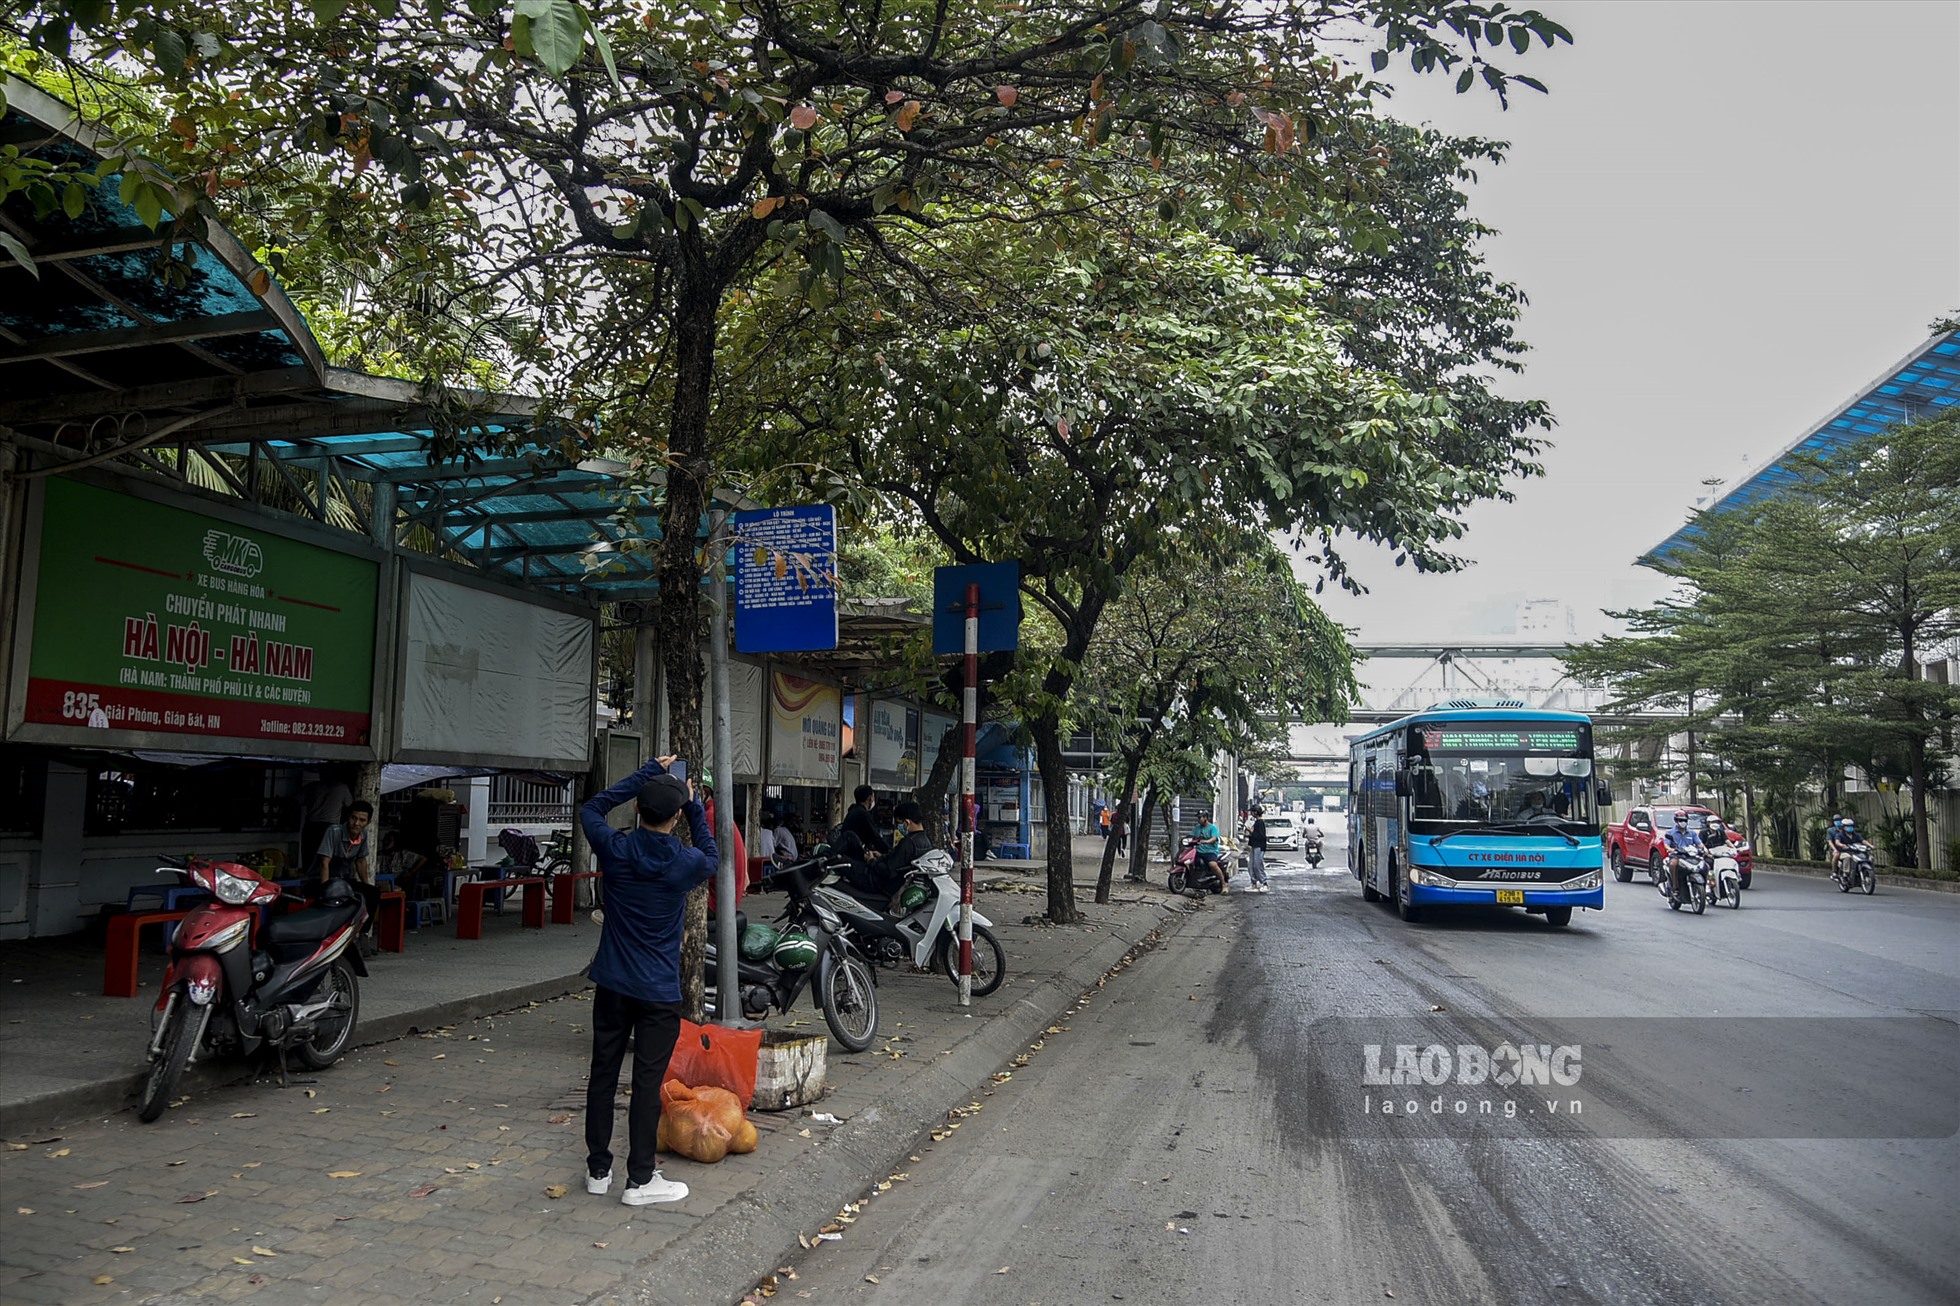 Ngày 13.11, theo ghi nhận của Lao Động, tại các nhà chờ xe buýt trong nội thành Hà Nội, không khó để bắt gặp một số nhà chờ xe buýt bị chiếm dụng thành nơi tụ tập, buôn bán nước giải khát, đồ ăn.